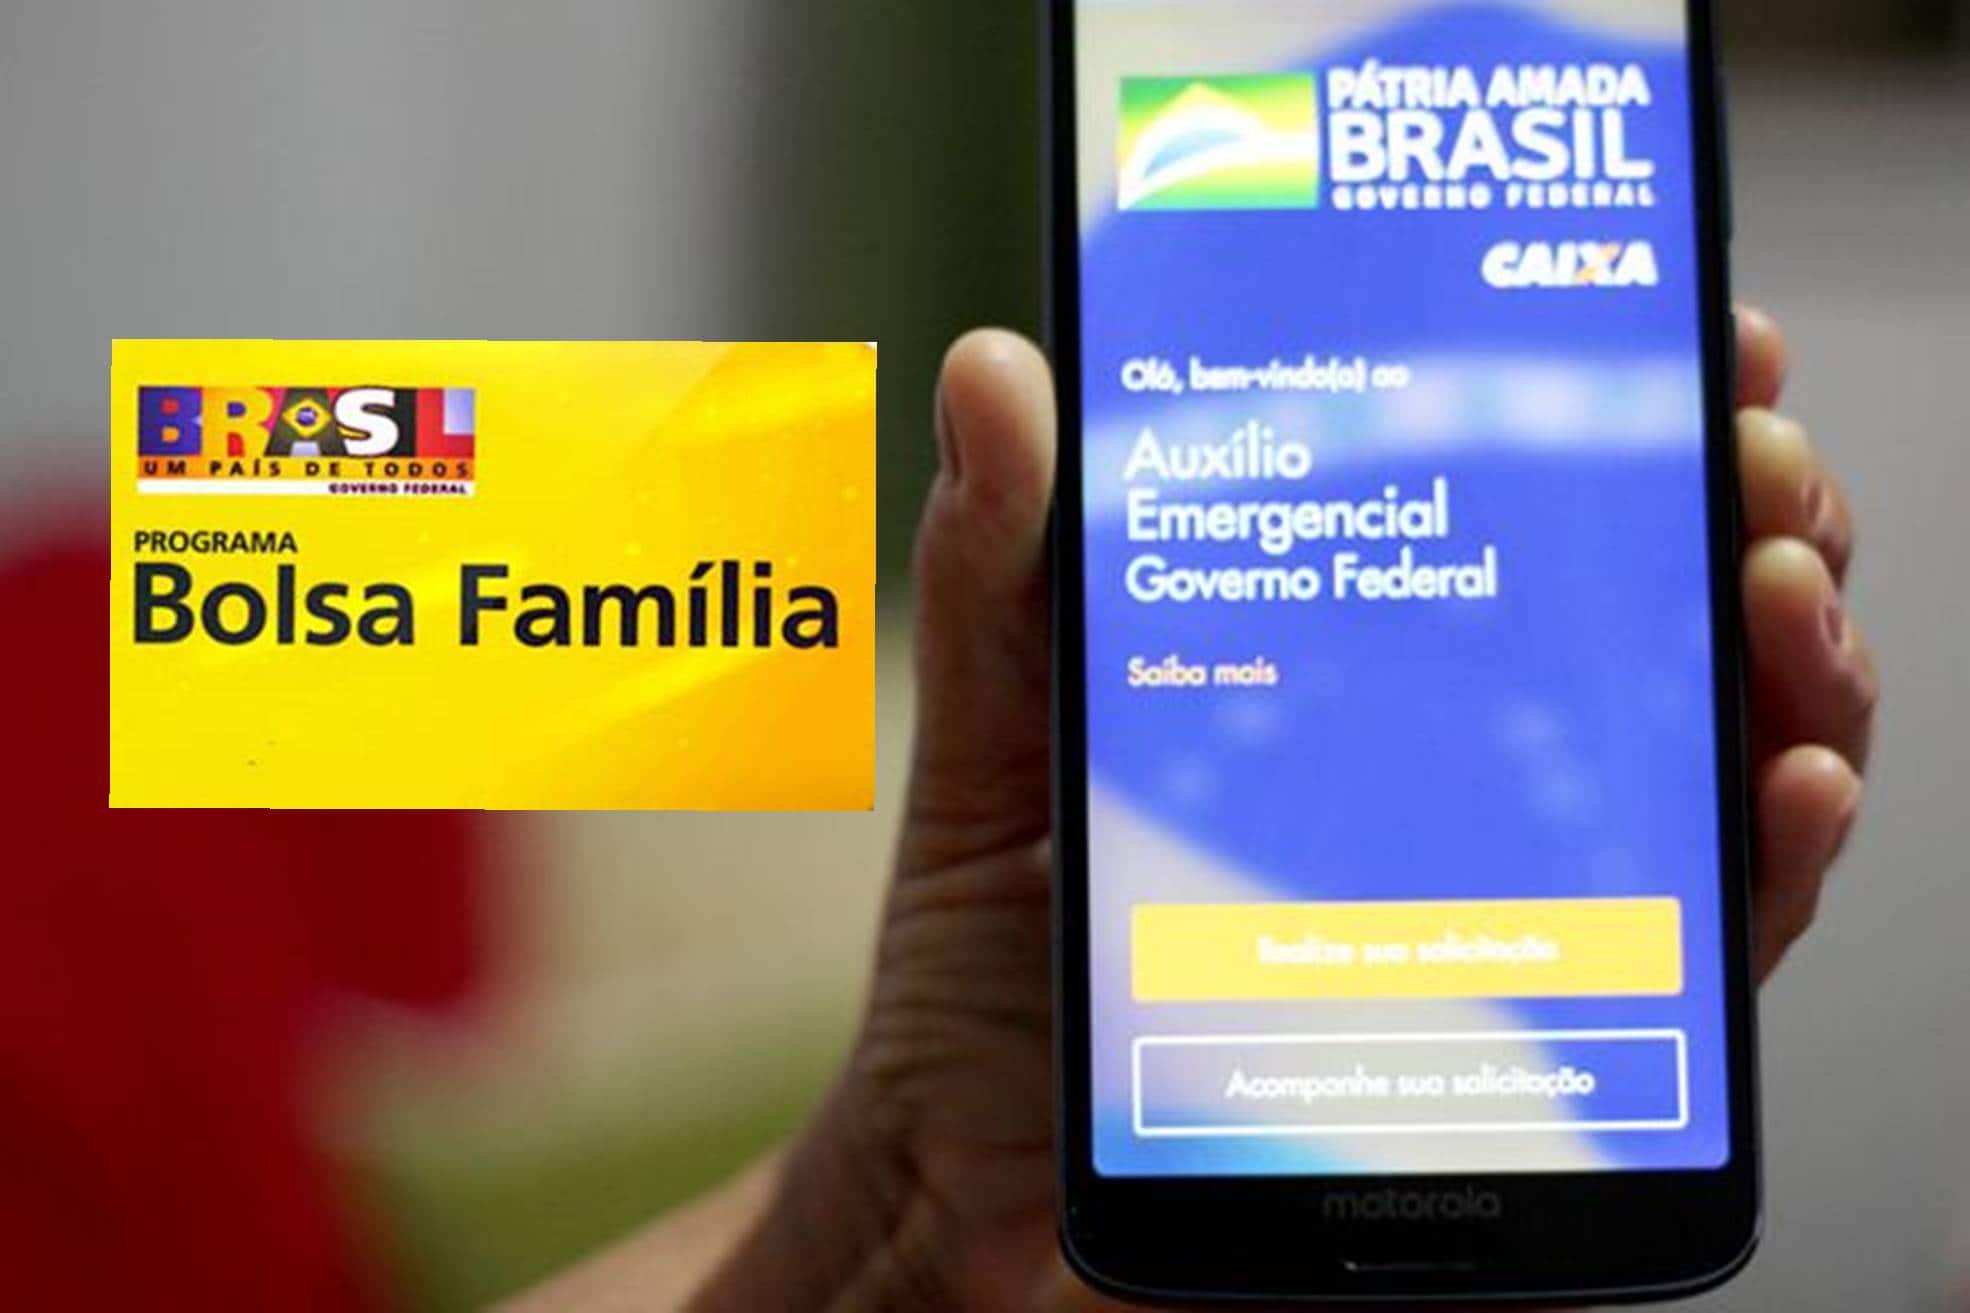 Bolsa Família e auxílio emergencial: Projeto oferece internet gratuita para beneficiários